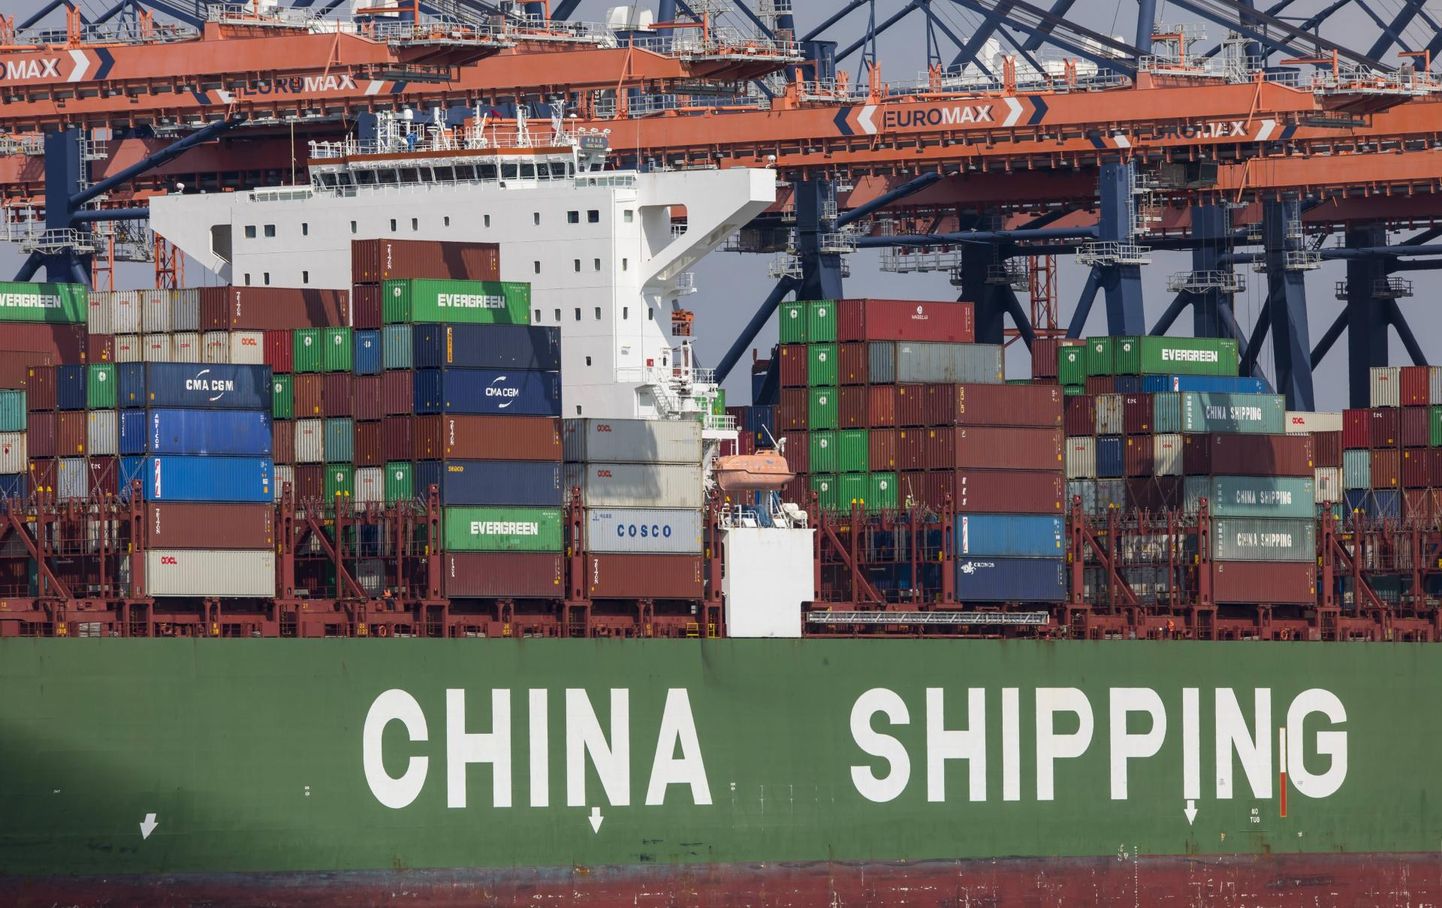 Hiinas on viiruse leviku tõttu suure hoobi saanud kõiksugu logistika ning kaubalaevad ei välju Hiina sadamatest plaanipäraselt. Seetõttu ei jõua tooraine Euroopasse ning olukord muutub ärevaks ka Viljandi tehastes.